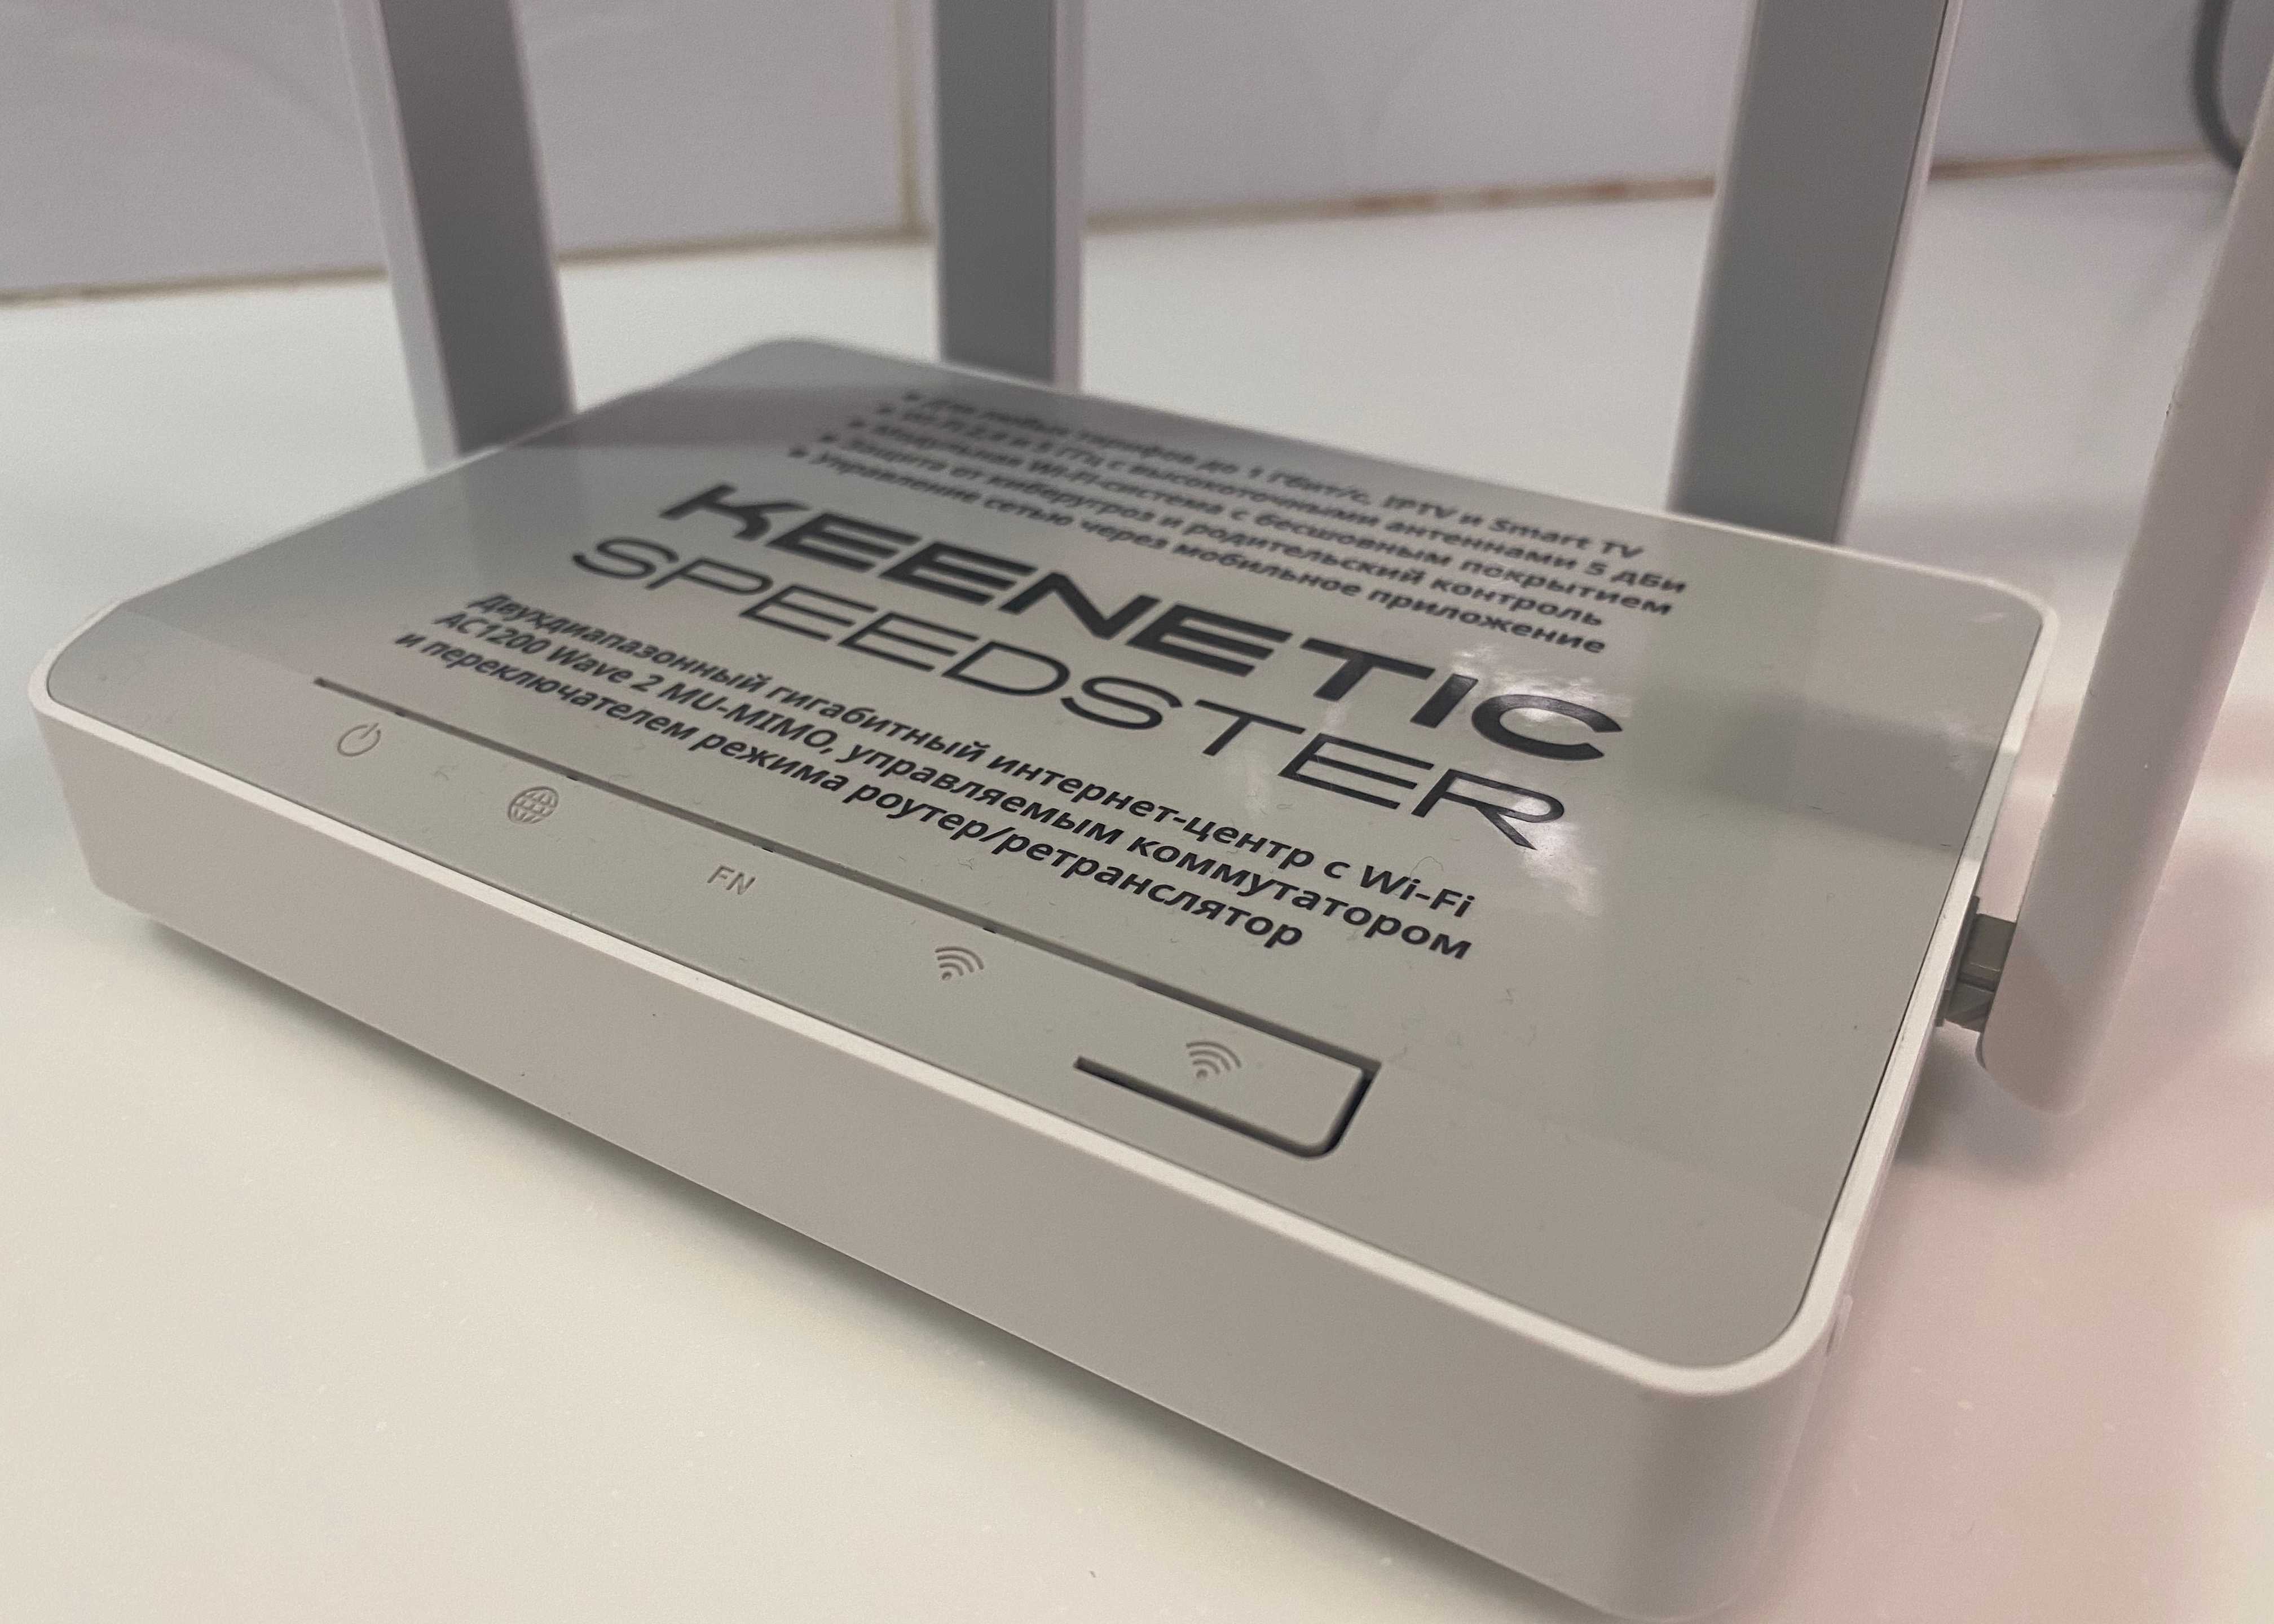 Обзор mesh от keenetic — строим wi-fi-сеть на базе air, speedster и viva